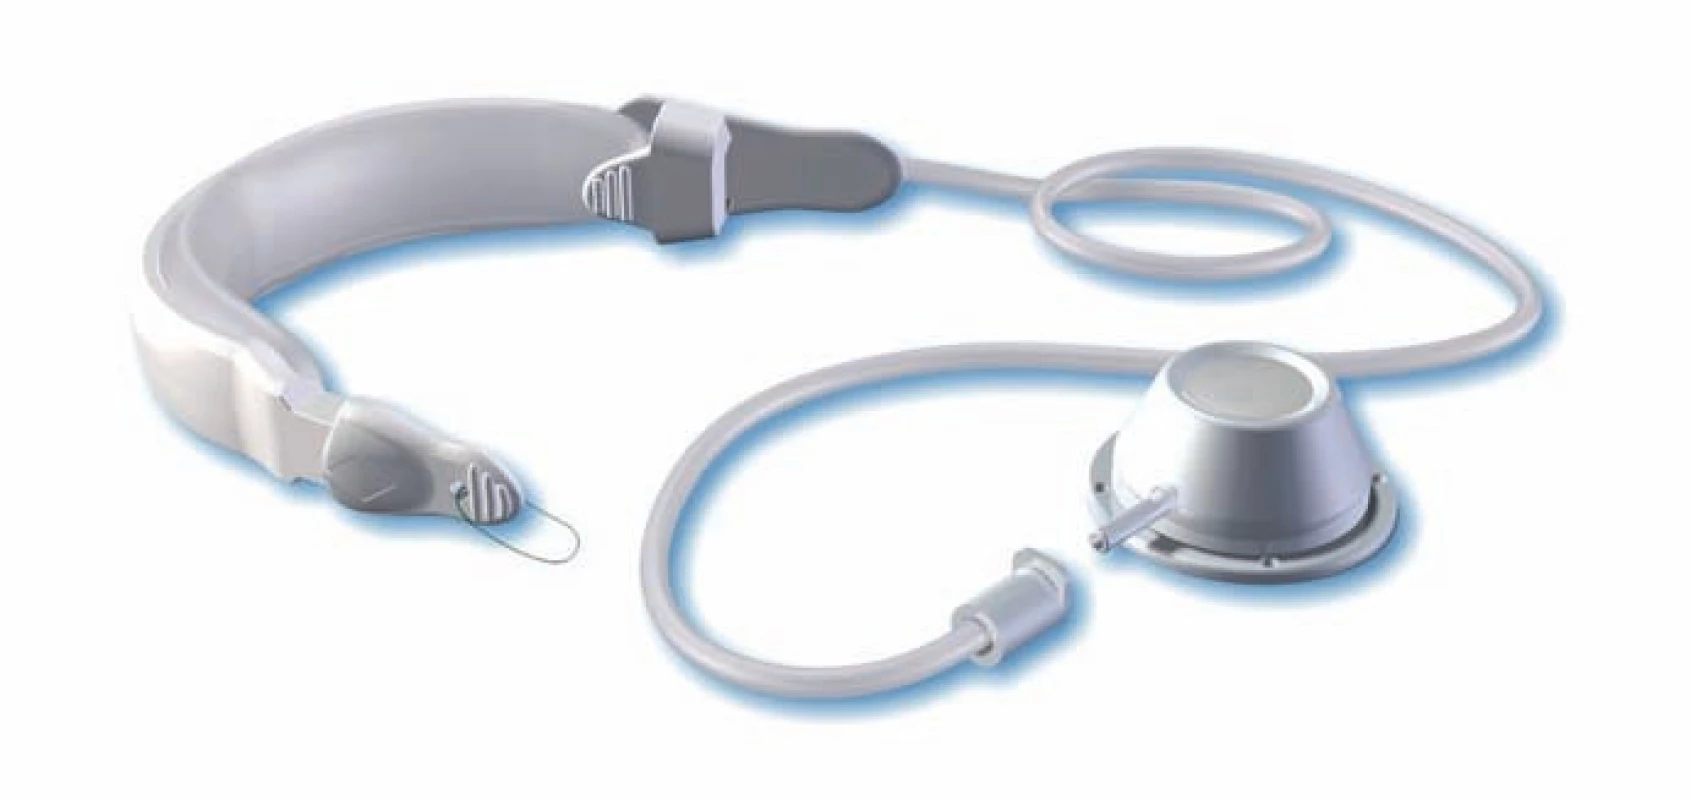 Silikonová manžeta – adjustabilní gastrická bandáž švédského typu – SAGB.